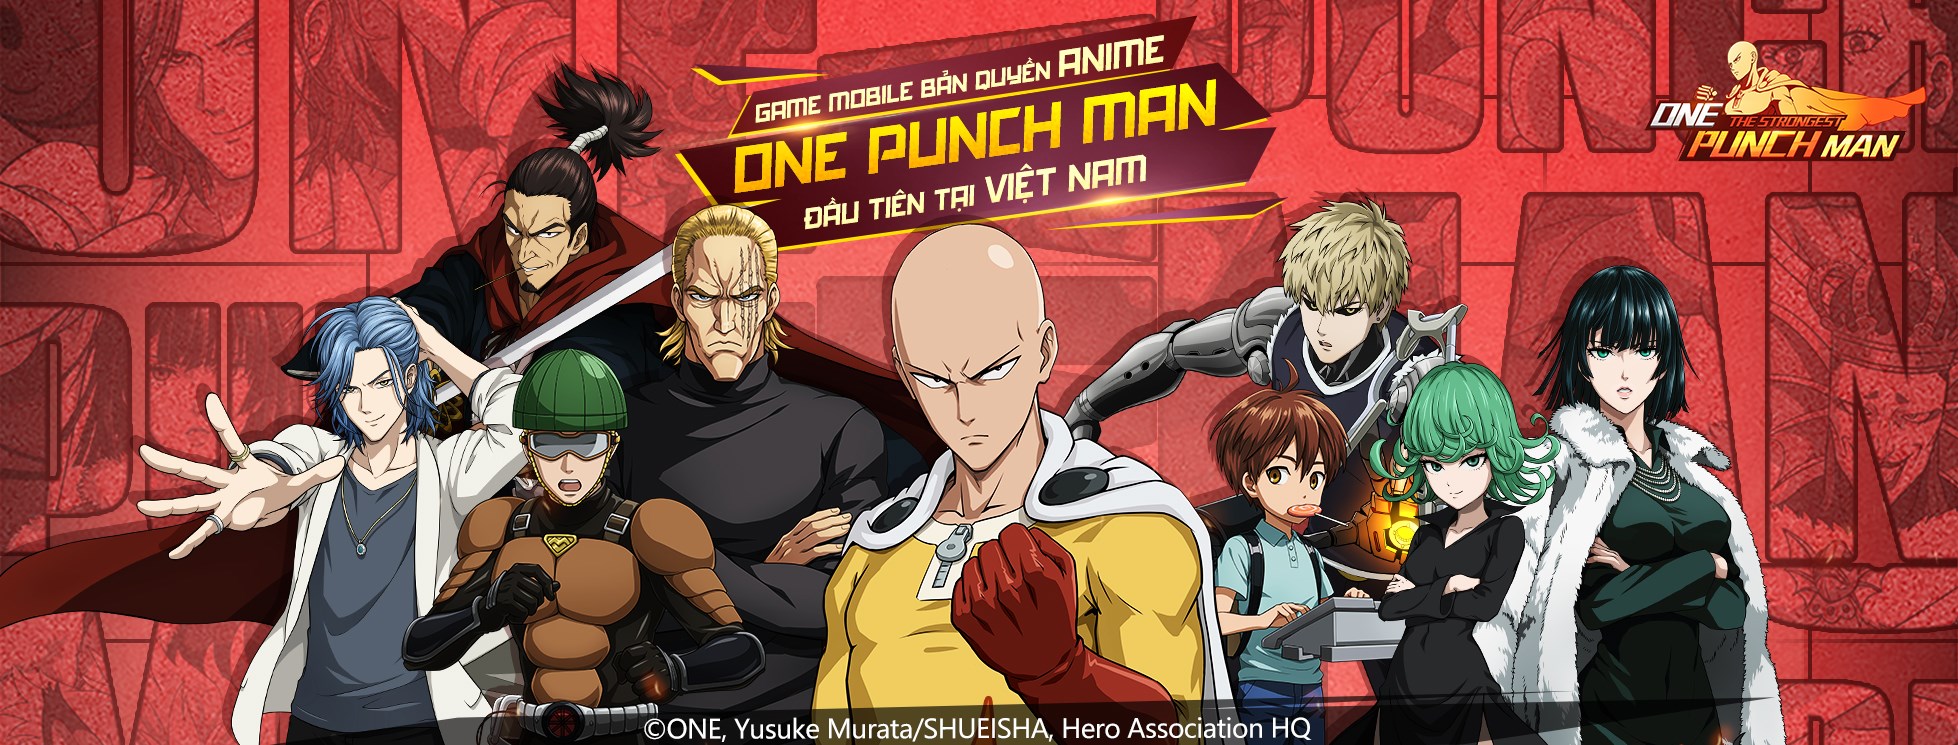 [NÓNG] One Punch Man: The Strongest sắp được phát hành tại Việt Nam